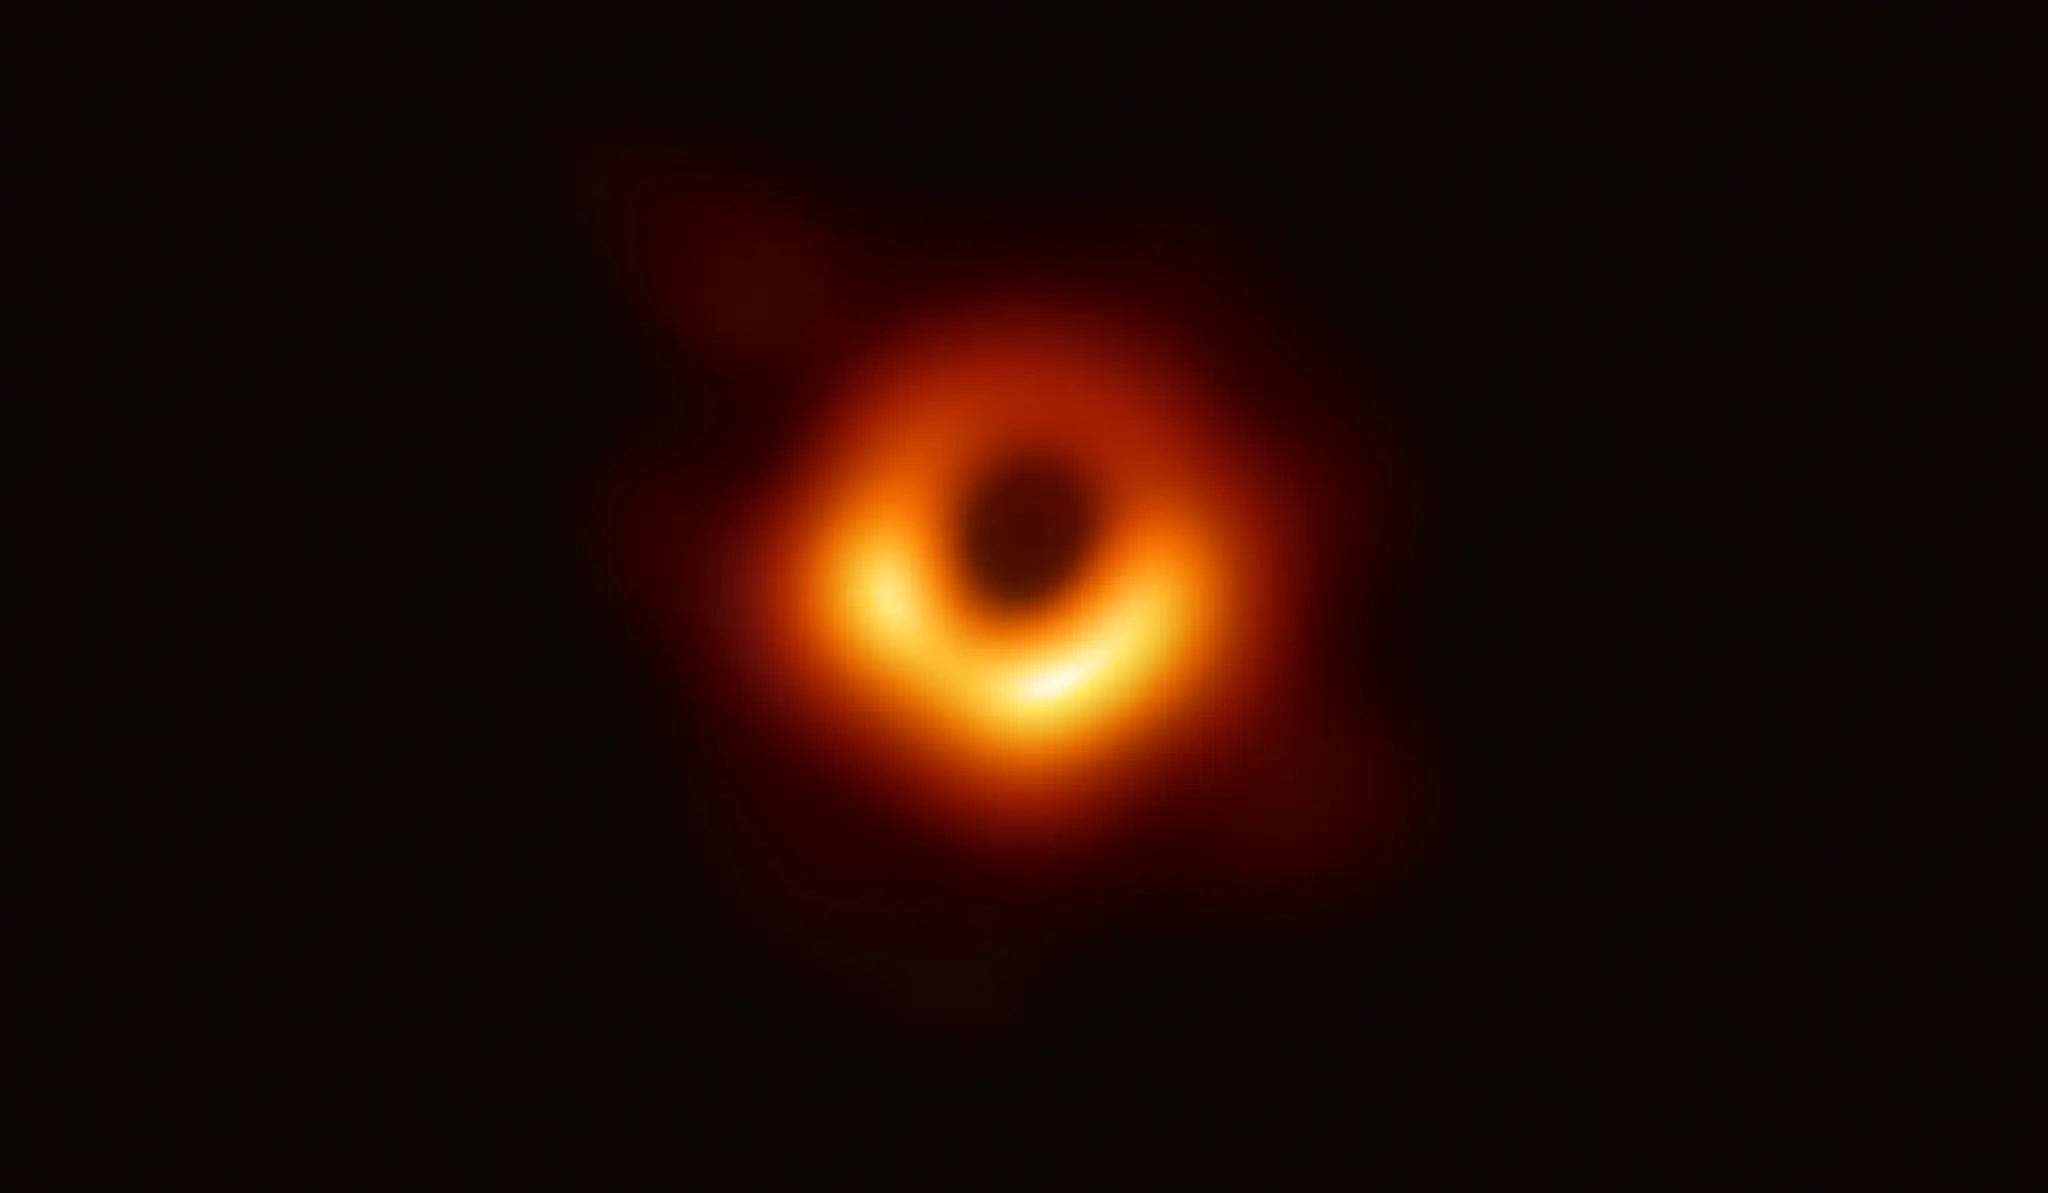 比太阳大54亿倍M87星系中的黑洞正在旋转 第一个被拍摄到的黑洞